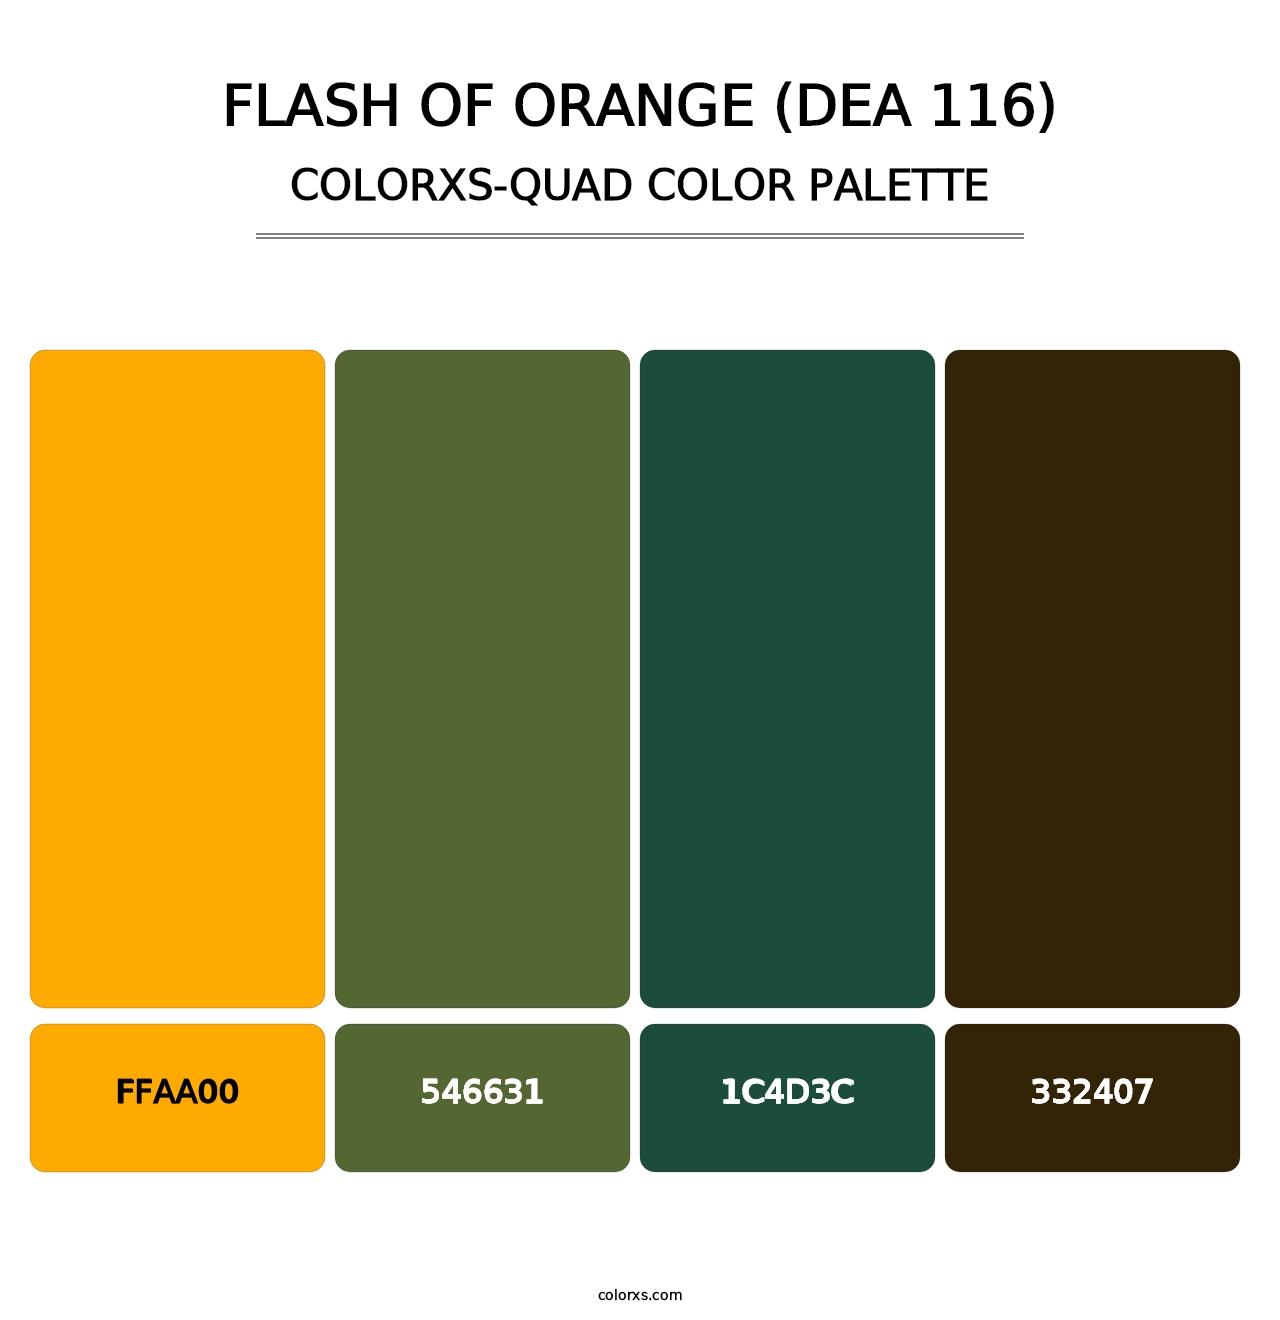 Flash of Orange (DEA 116) - Colorxs Quad Palette